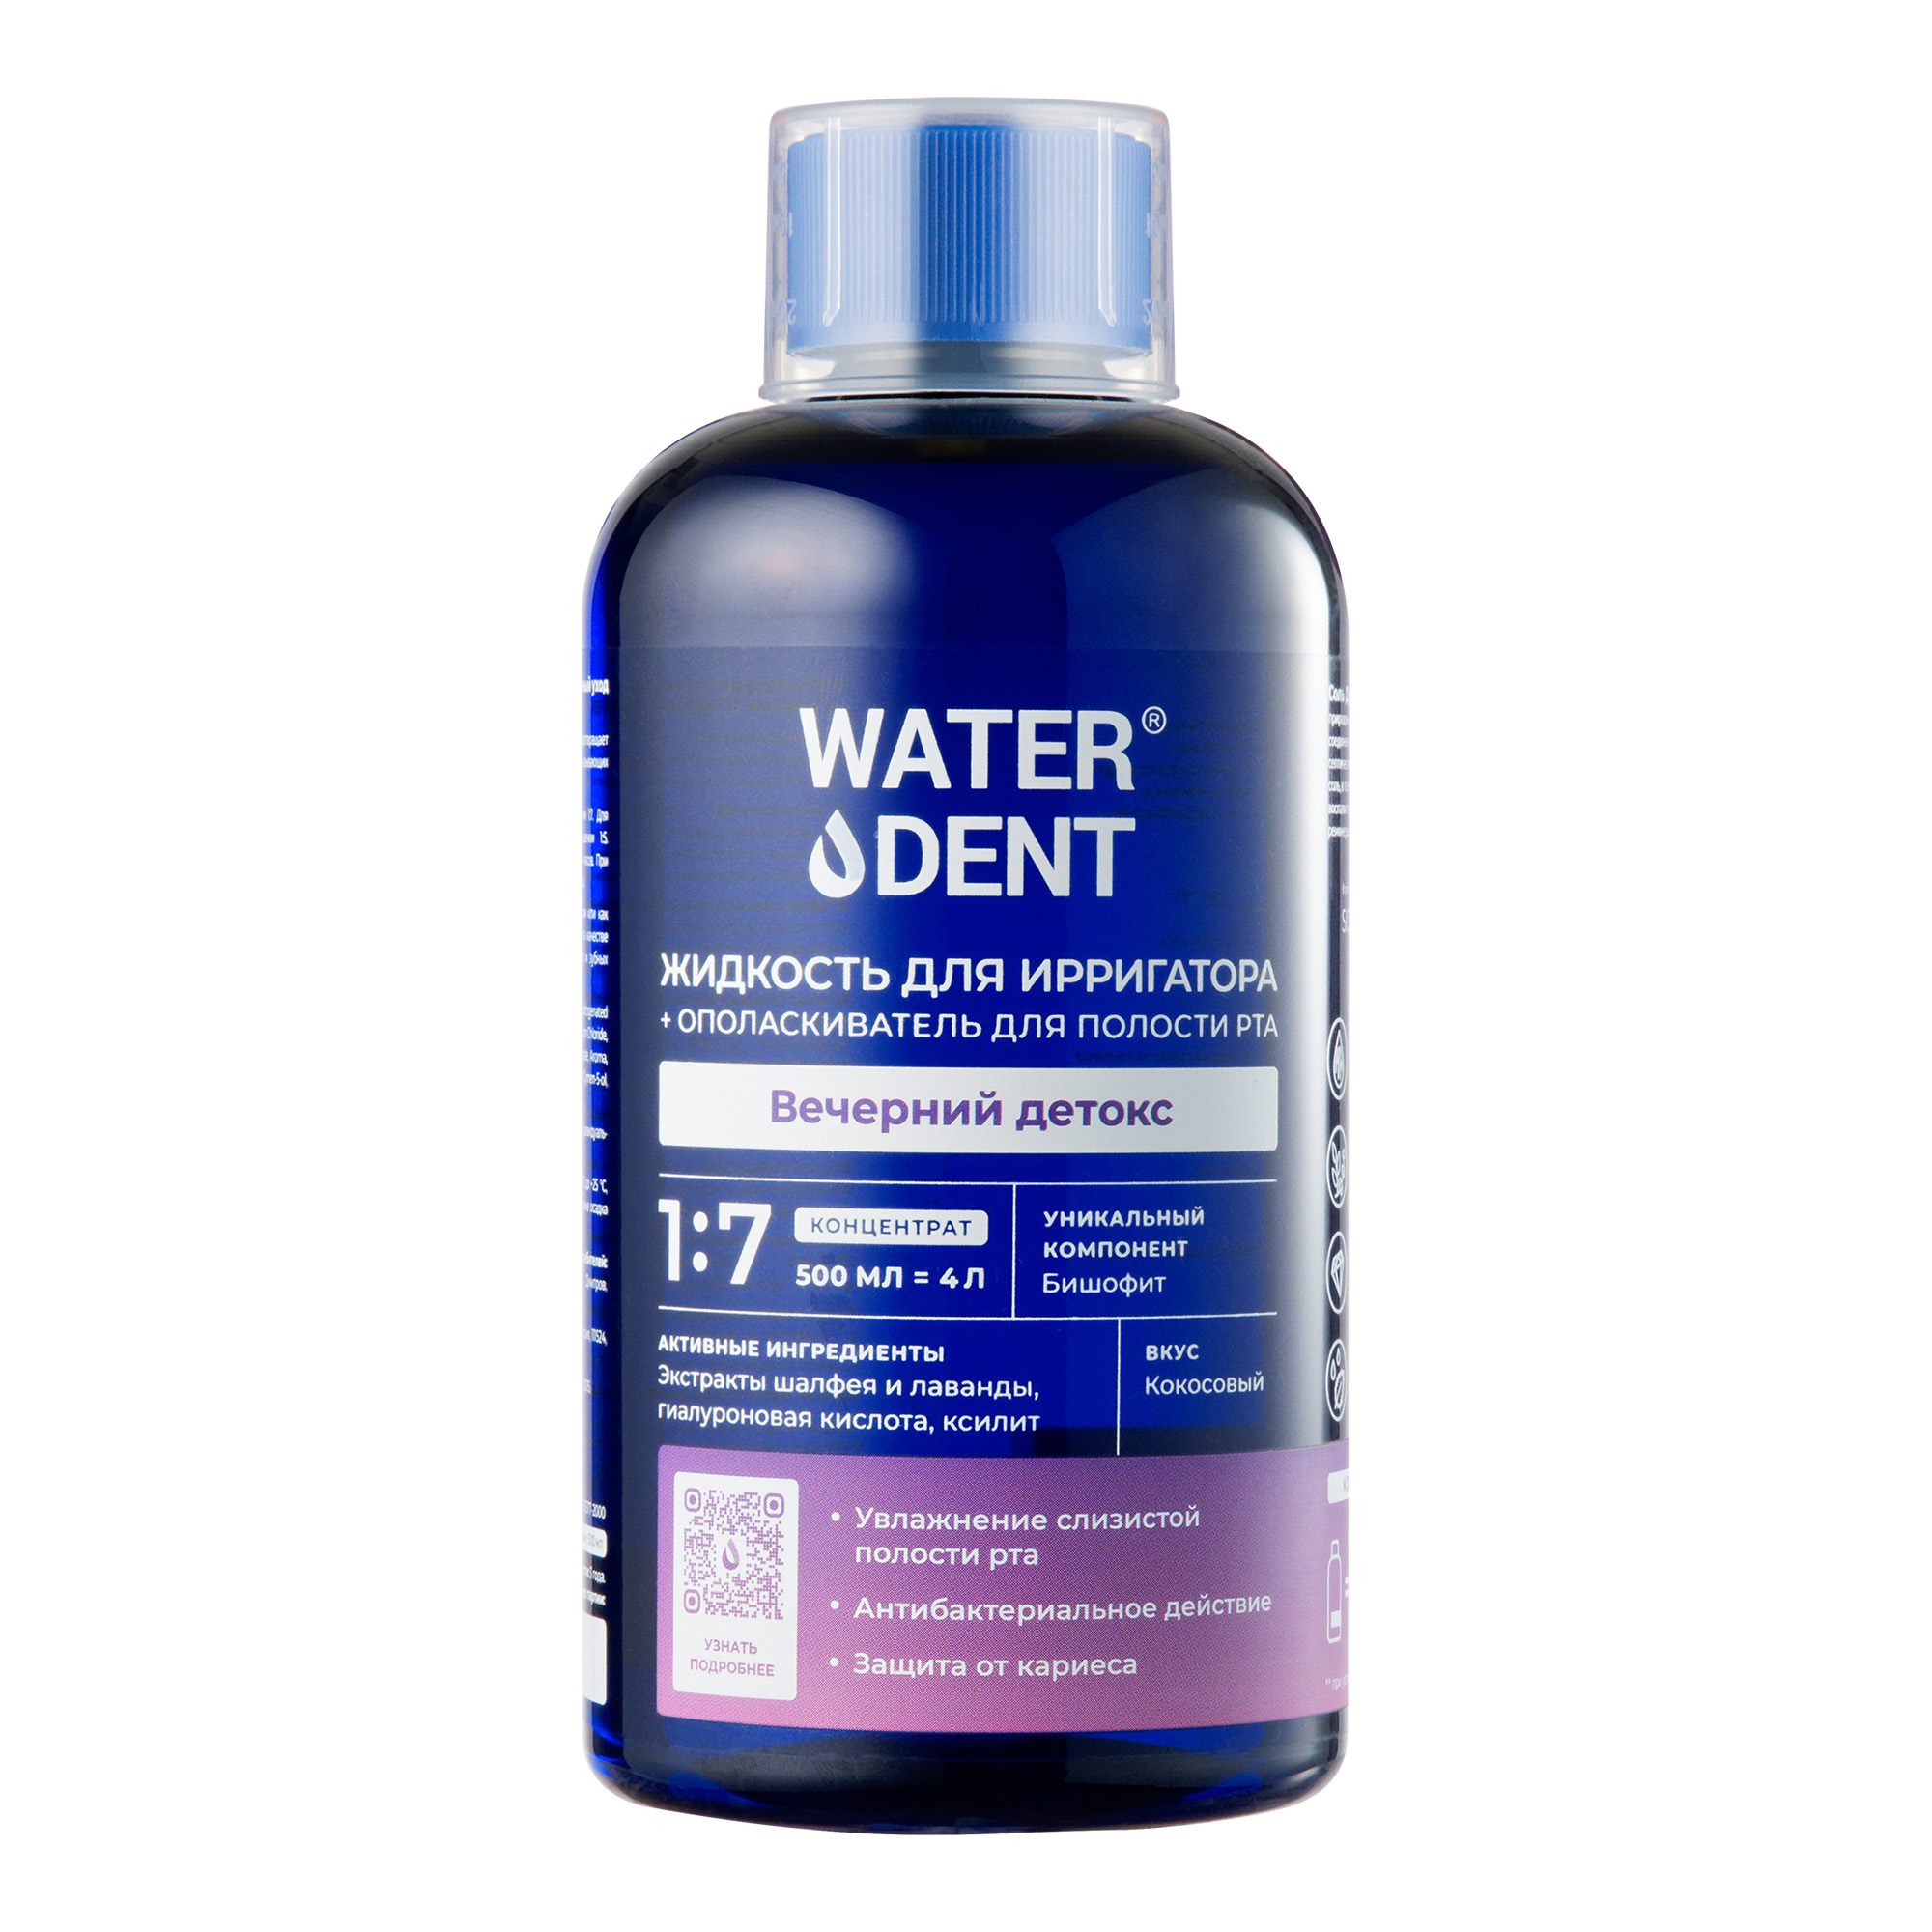 Waterdent, жидкость для ирригатора Вечерний детокс Кокос, флакон 500 мл waterdent жидкость д ирригатора ополаскиватель антибактериальная 500 мл